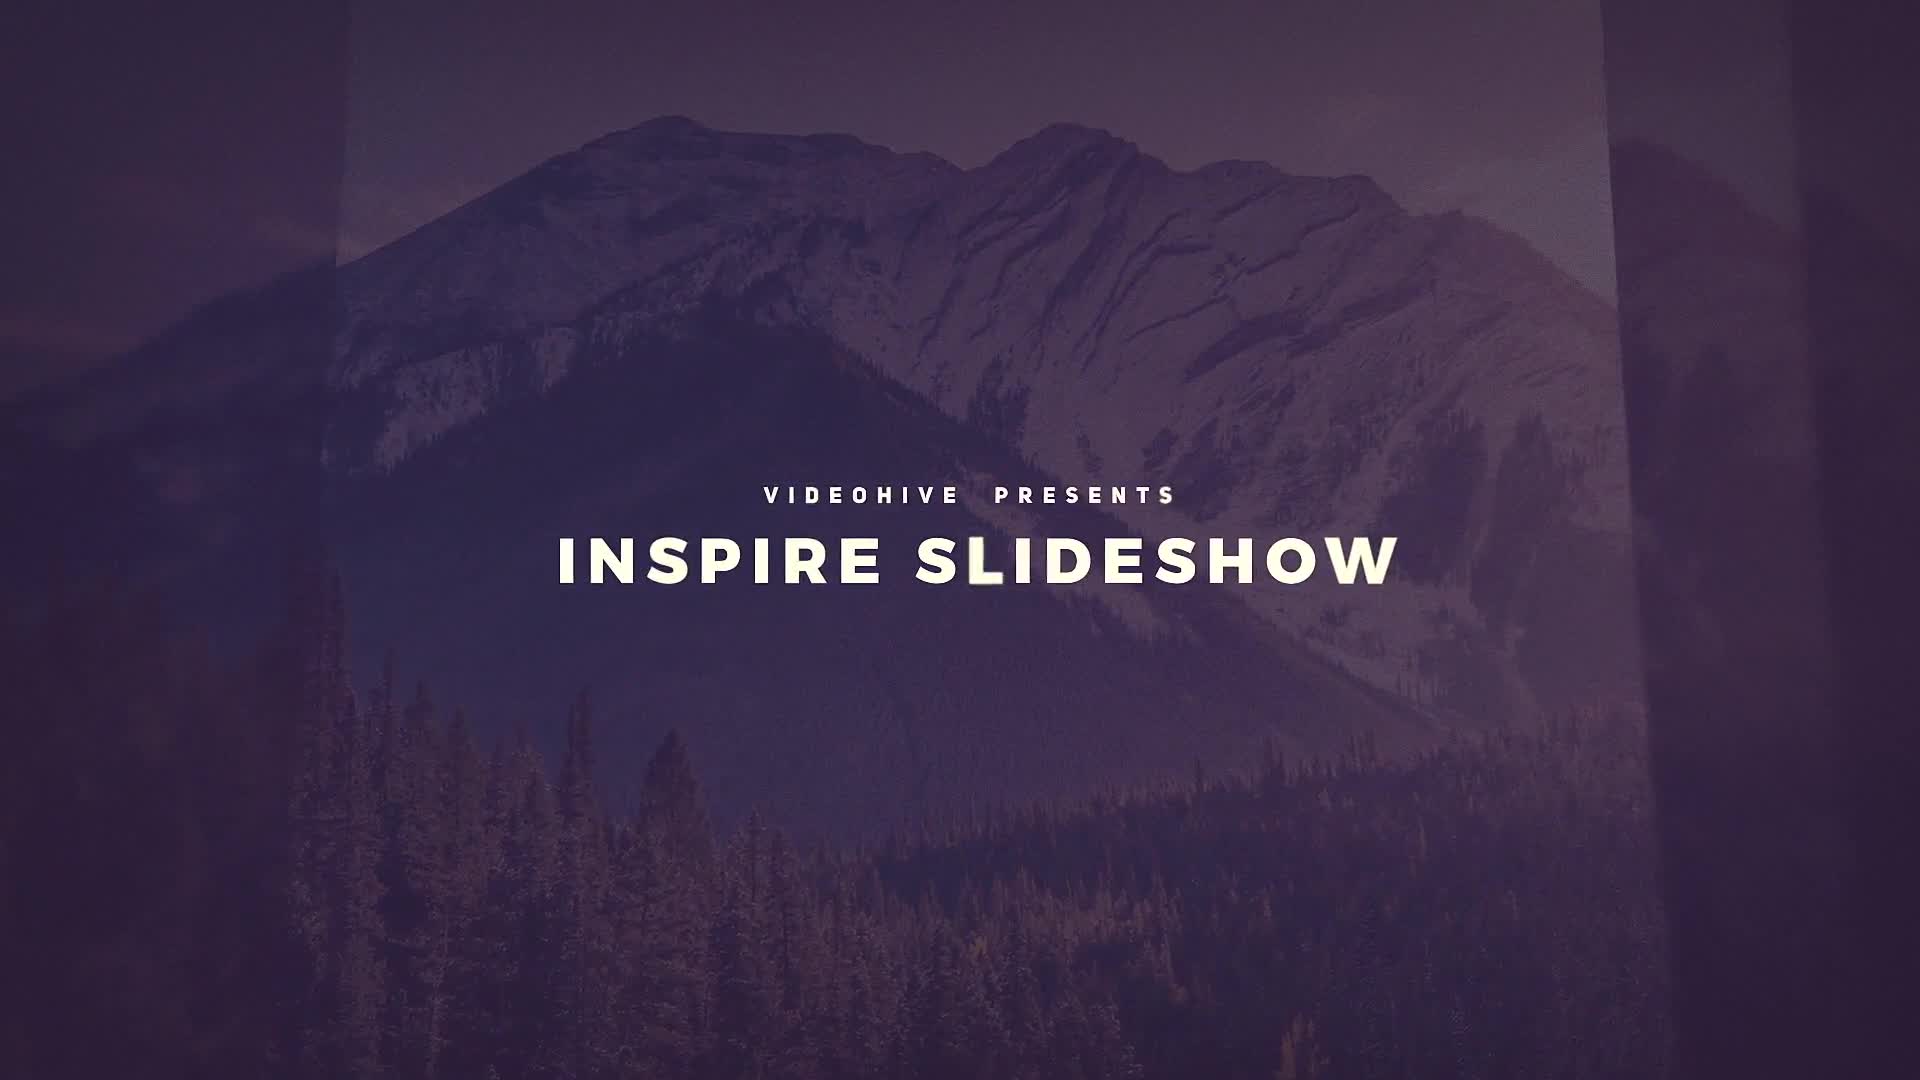 Inspire Slideshow Videohive 25061977 Premiere Pro Image 1